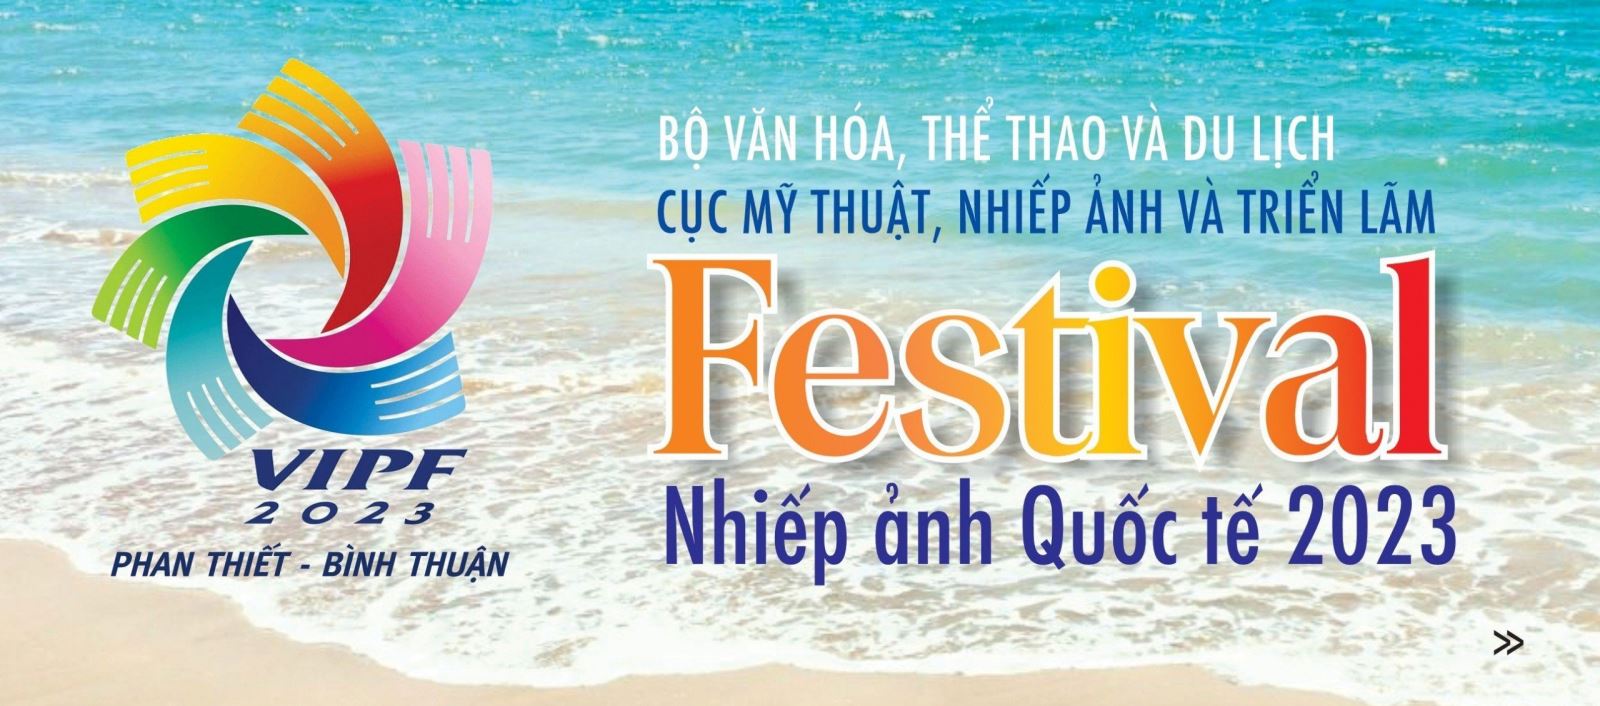 Từ 20-30/10: Festival Nhiếp ảnh quốc tế Việt Nam lần thứ hai, năm 2023 tại tỉnh Bình Thuận